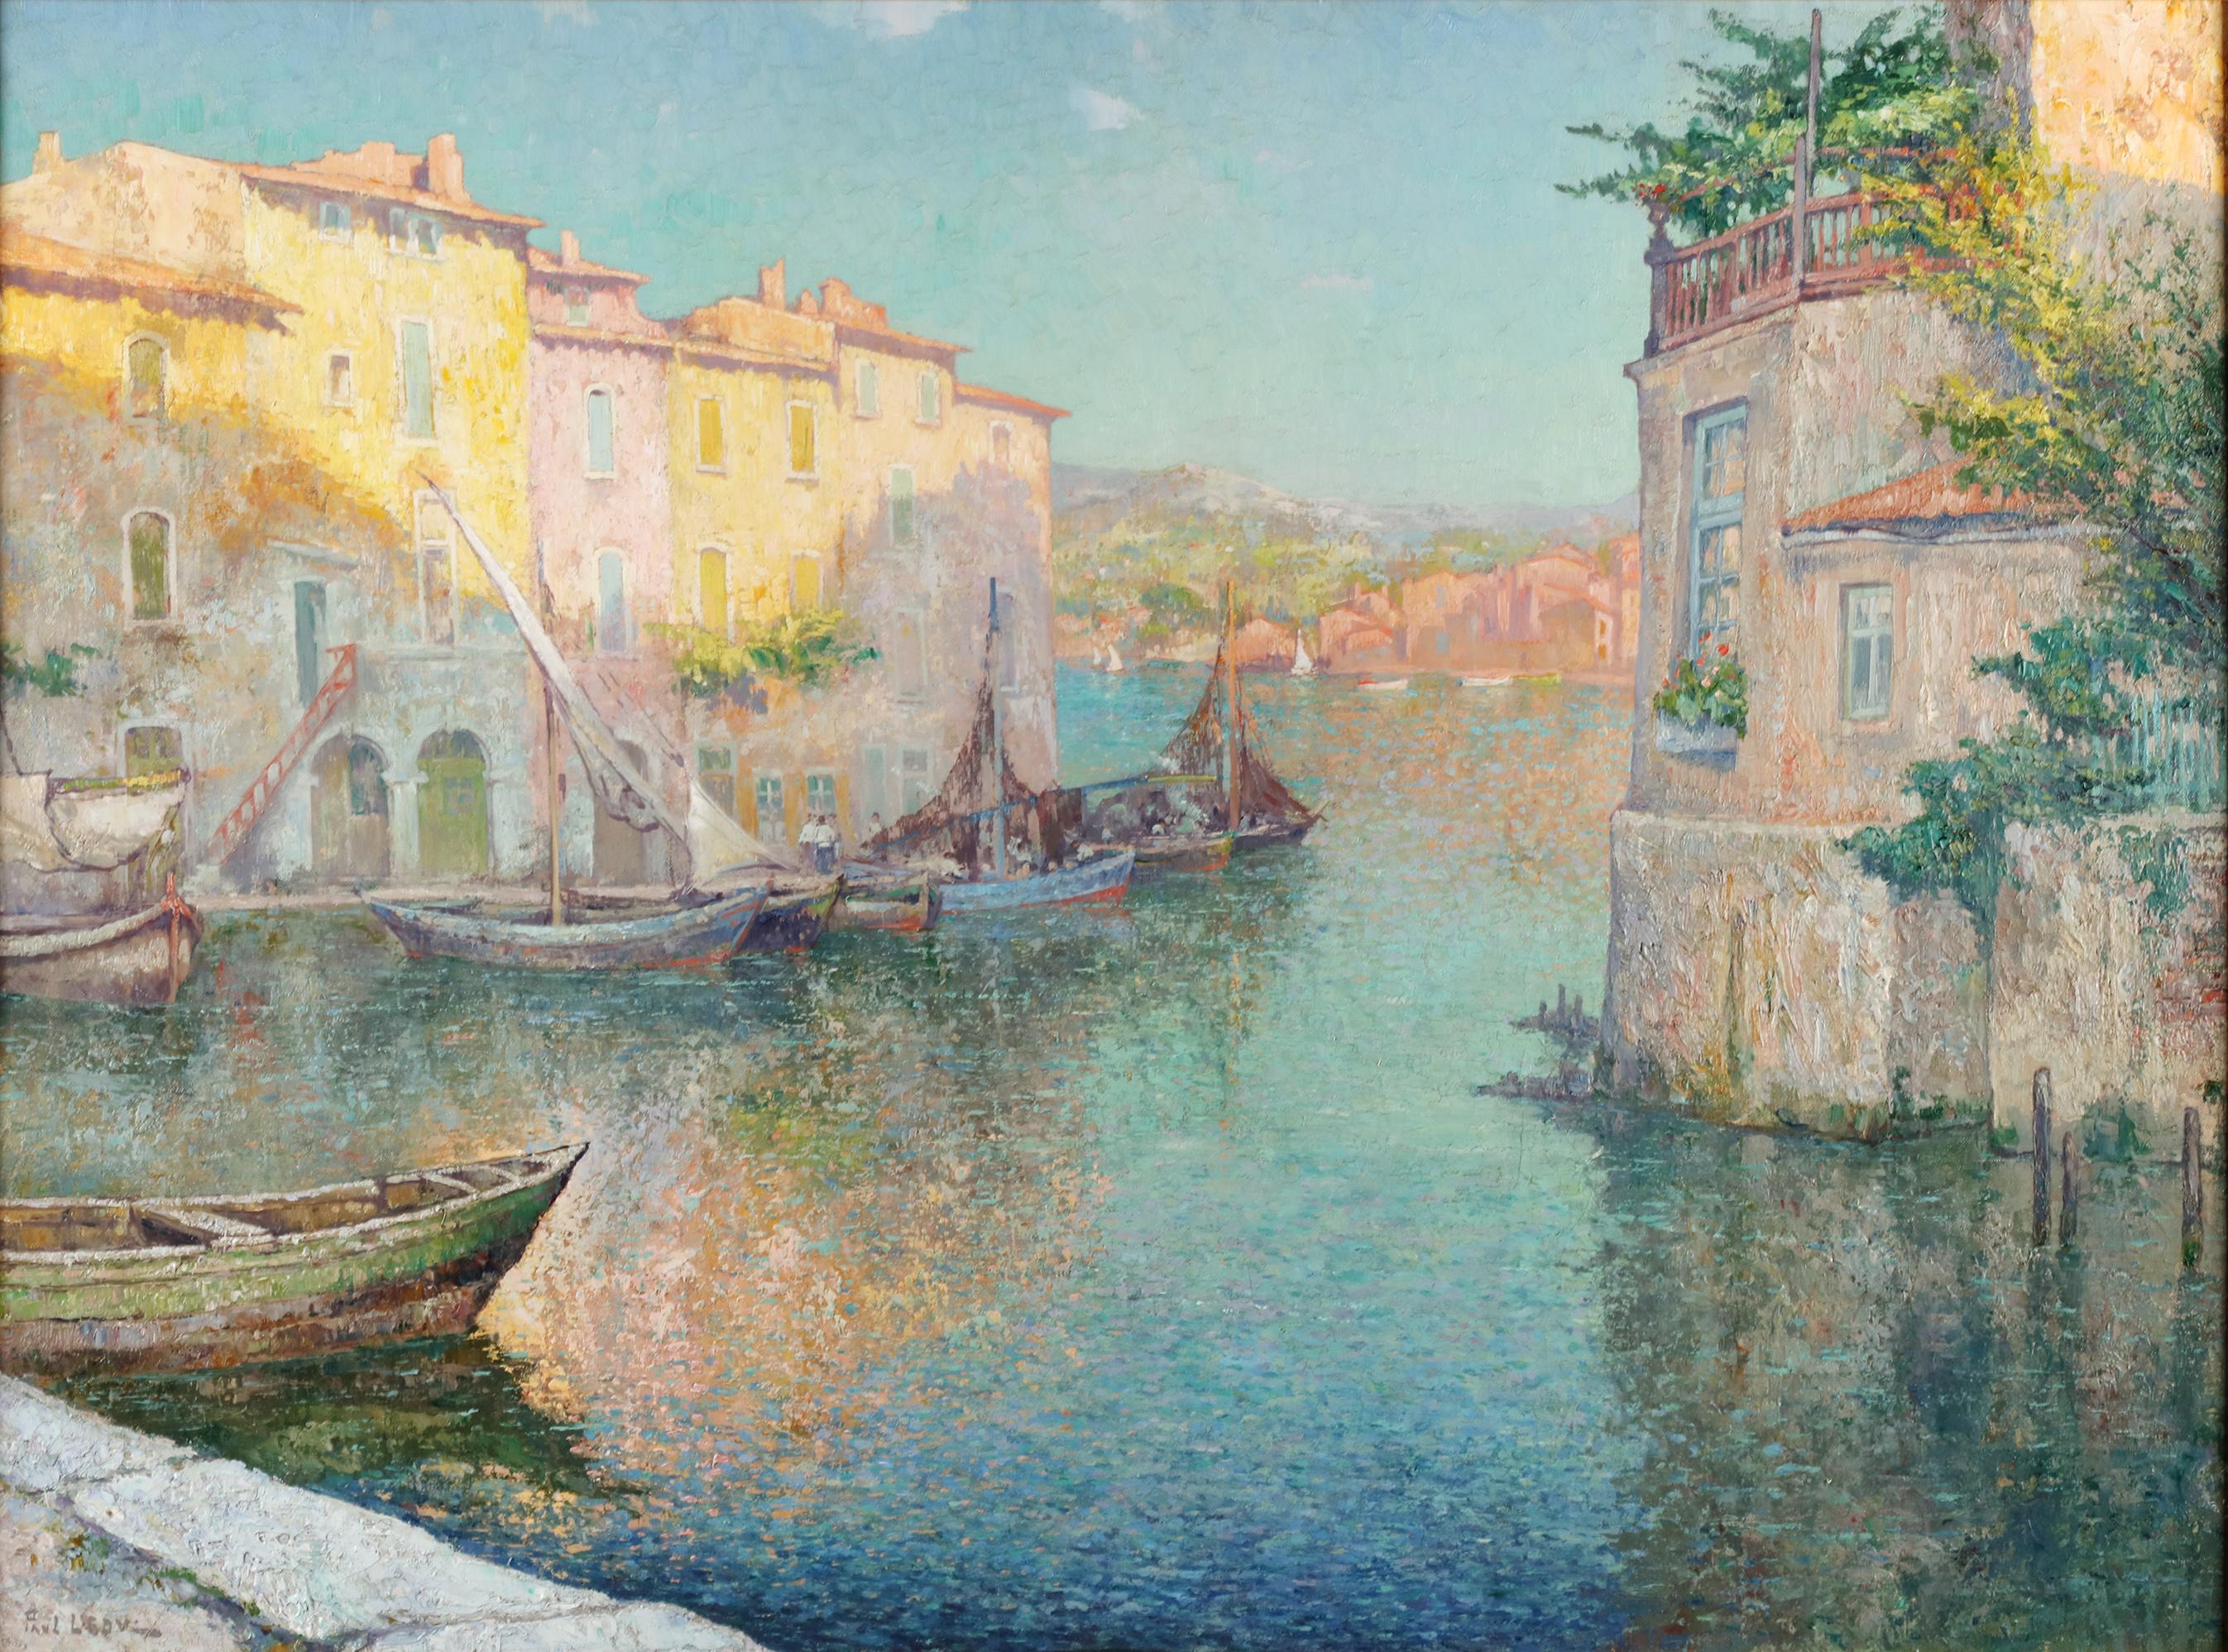 Le Miroir aux Oiseaux in Martigues - Paul Leduc (1876 - 1943)  1